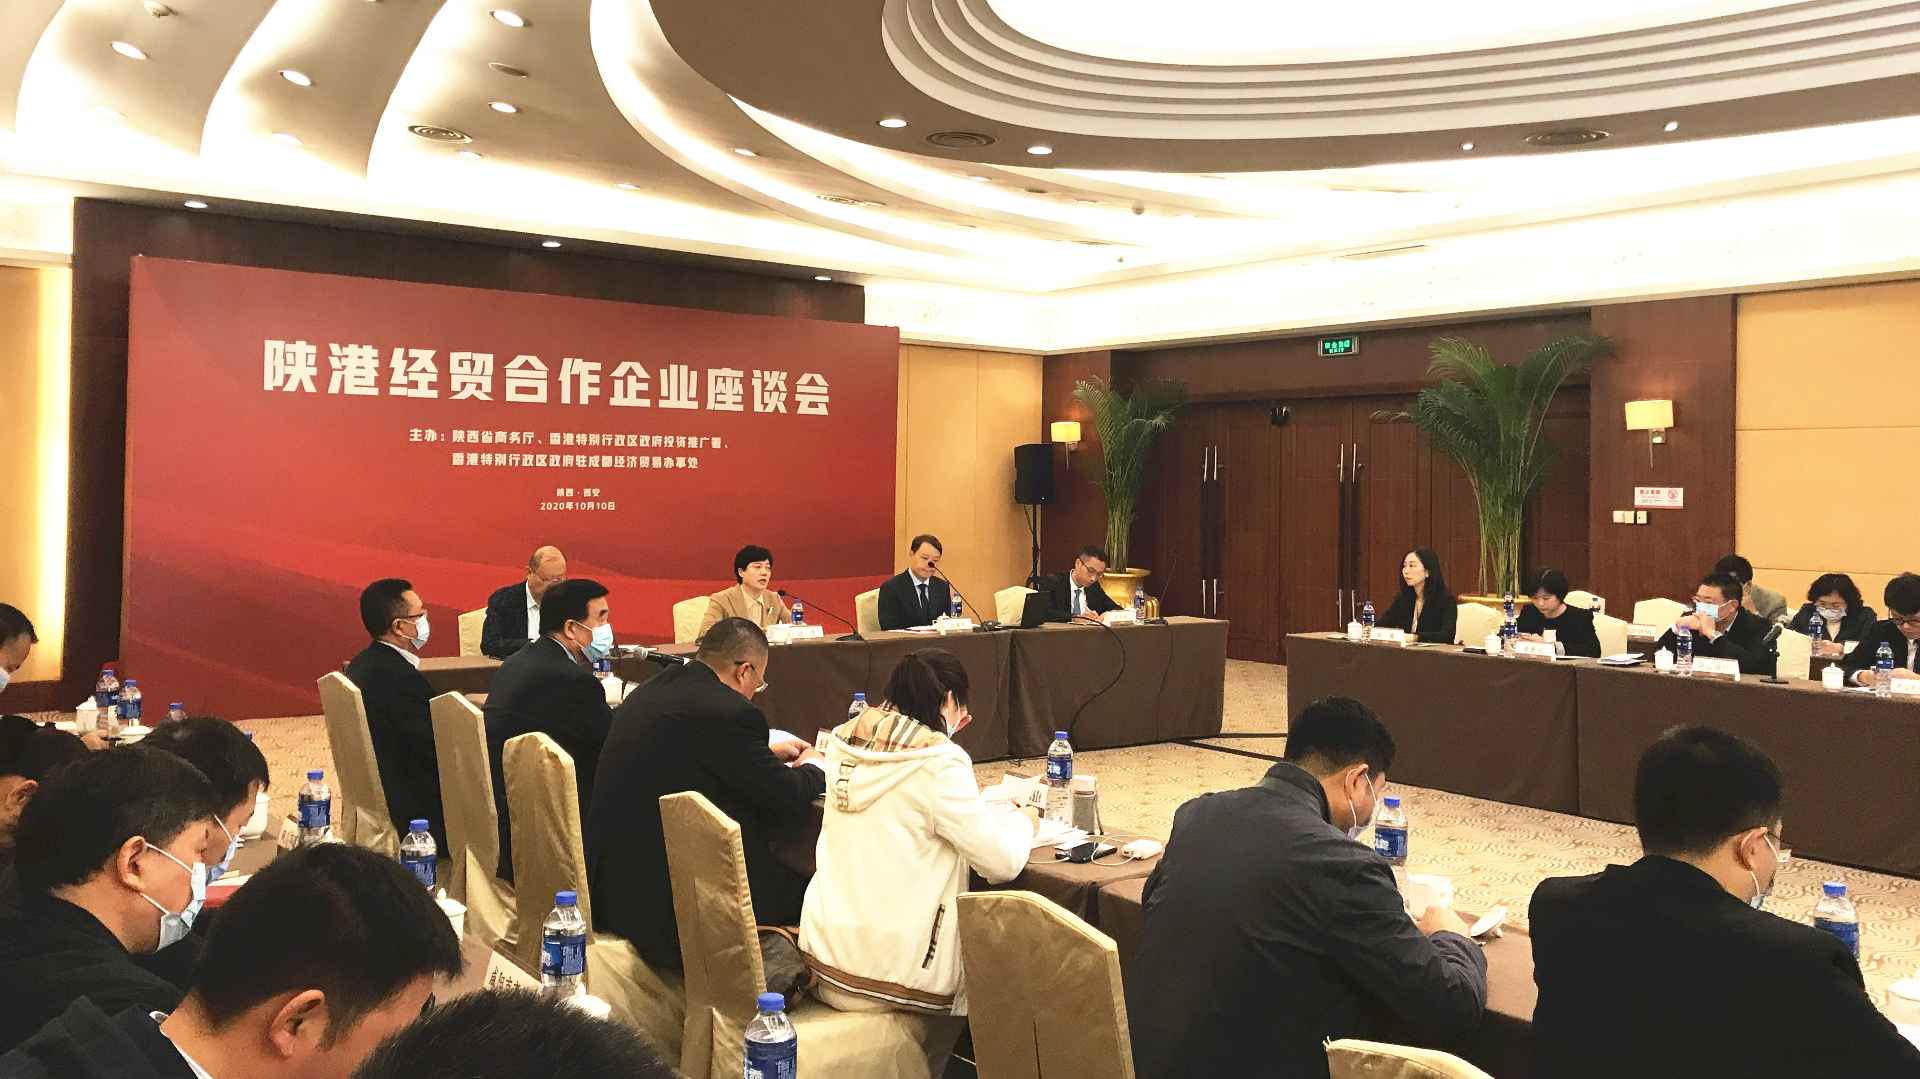 共同培育新優勢 力拓國內國際市場 陝港商研企業深度合作